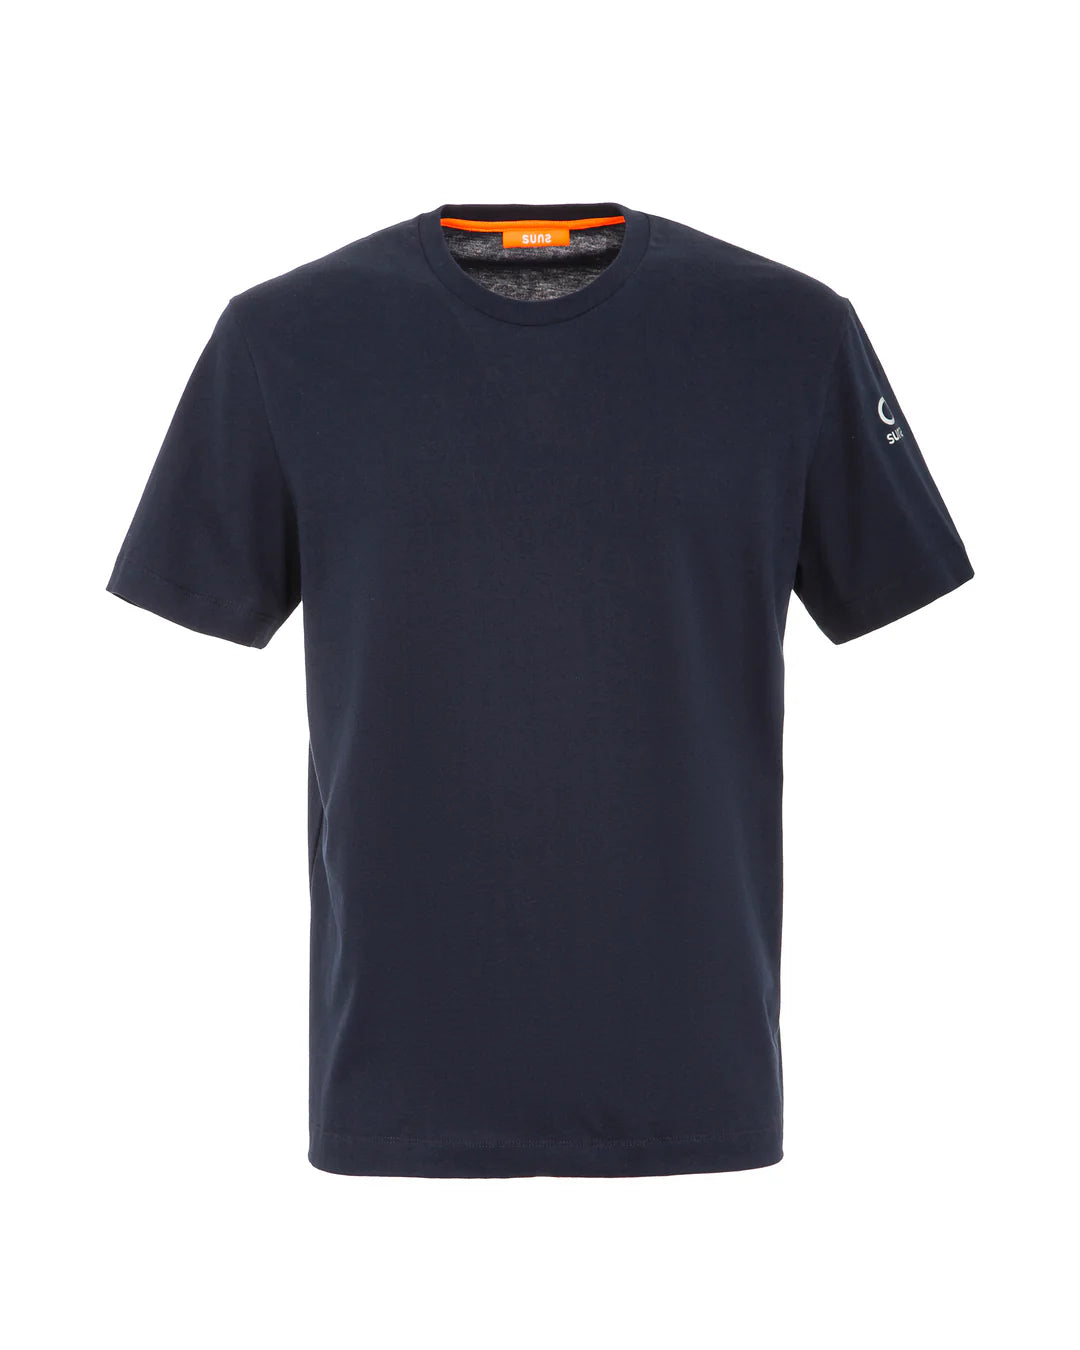 SUNS T-shirt Uomo - Blu modello TSS41005U